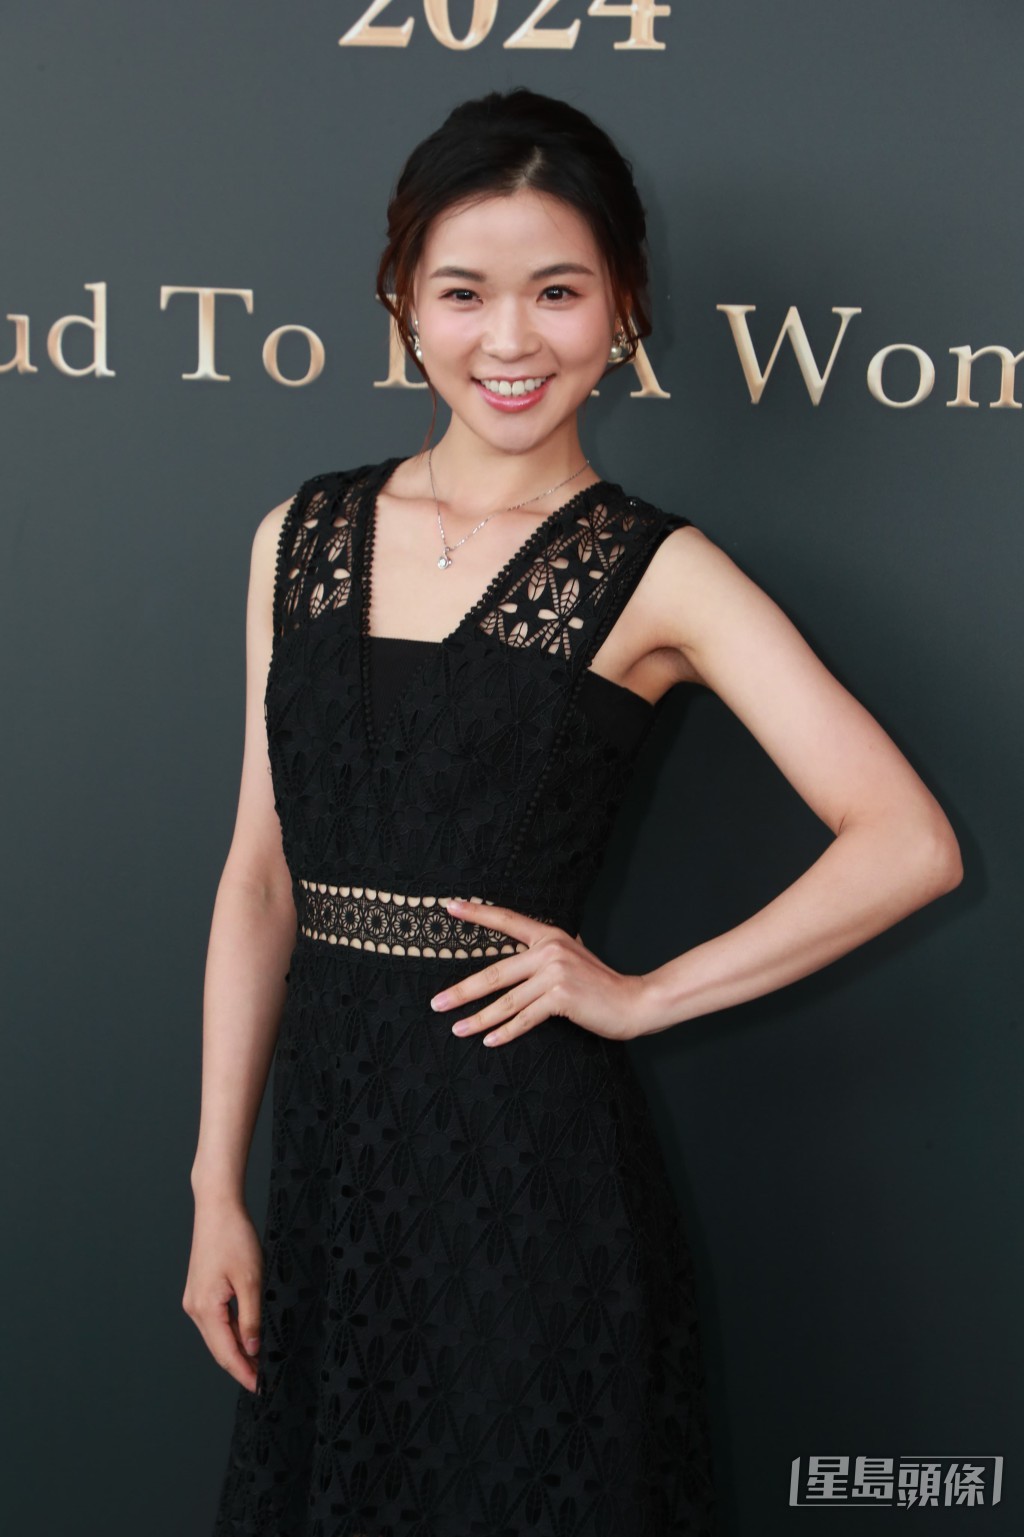 现年23岁的张安妮（Annie）是温哥华华裔小姐季军得主。